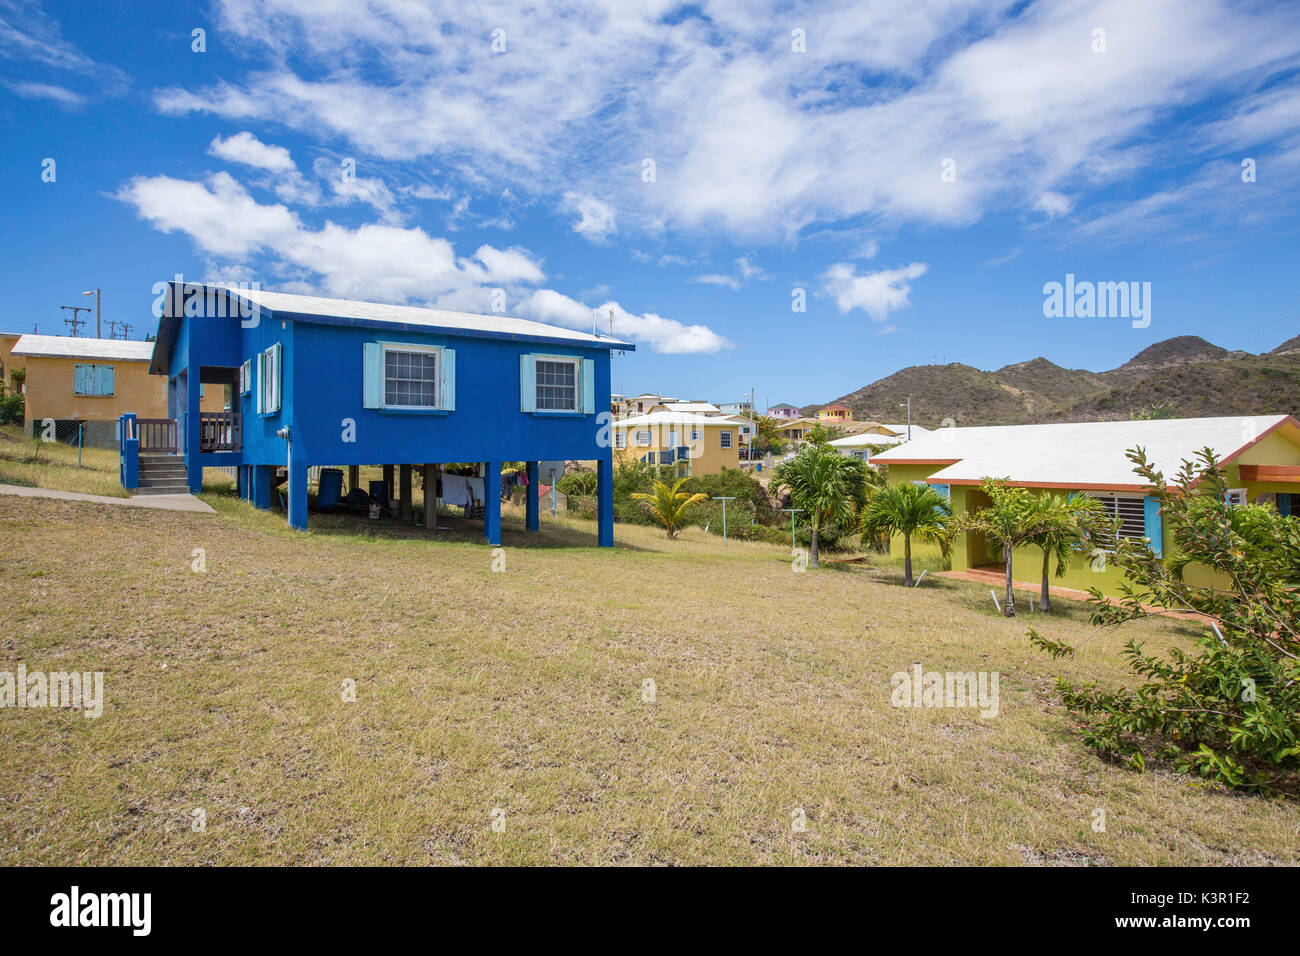 Bunte Häuser eines Dorfes auf einem sonnigen Tag Montserrat Karibik Leeward Inseln der Kleinen Antillen Stockfoto